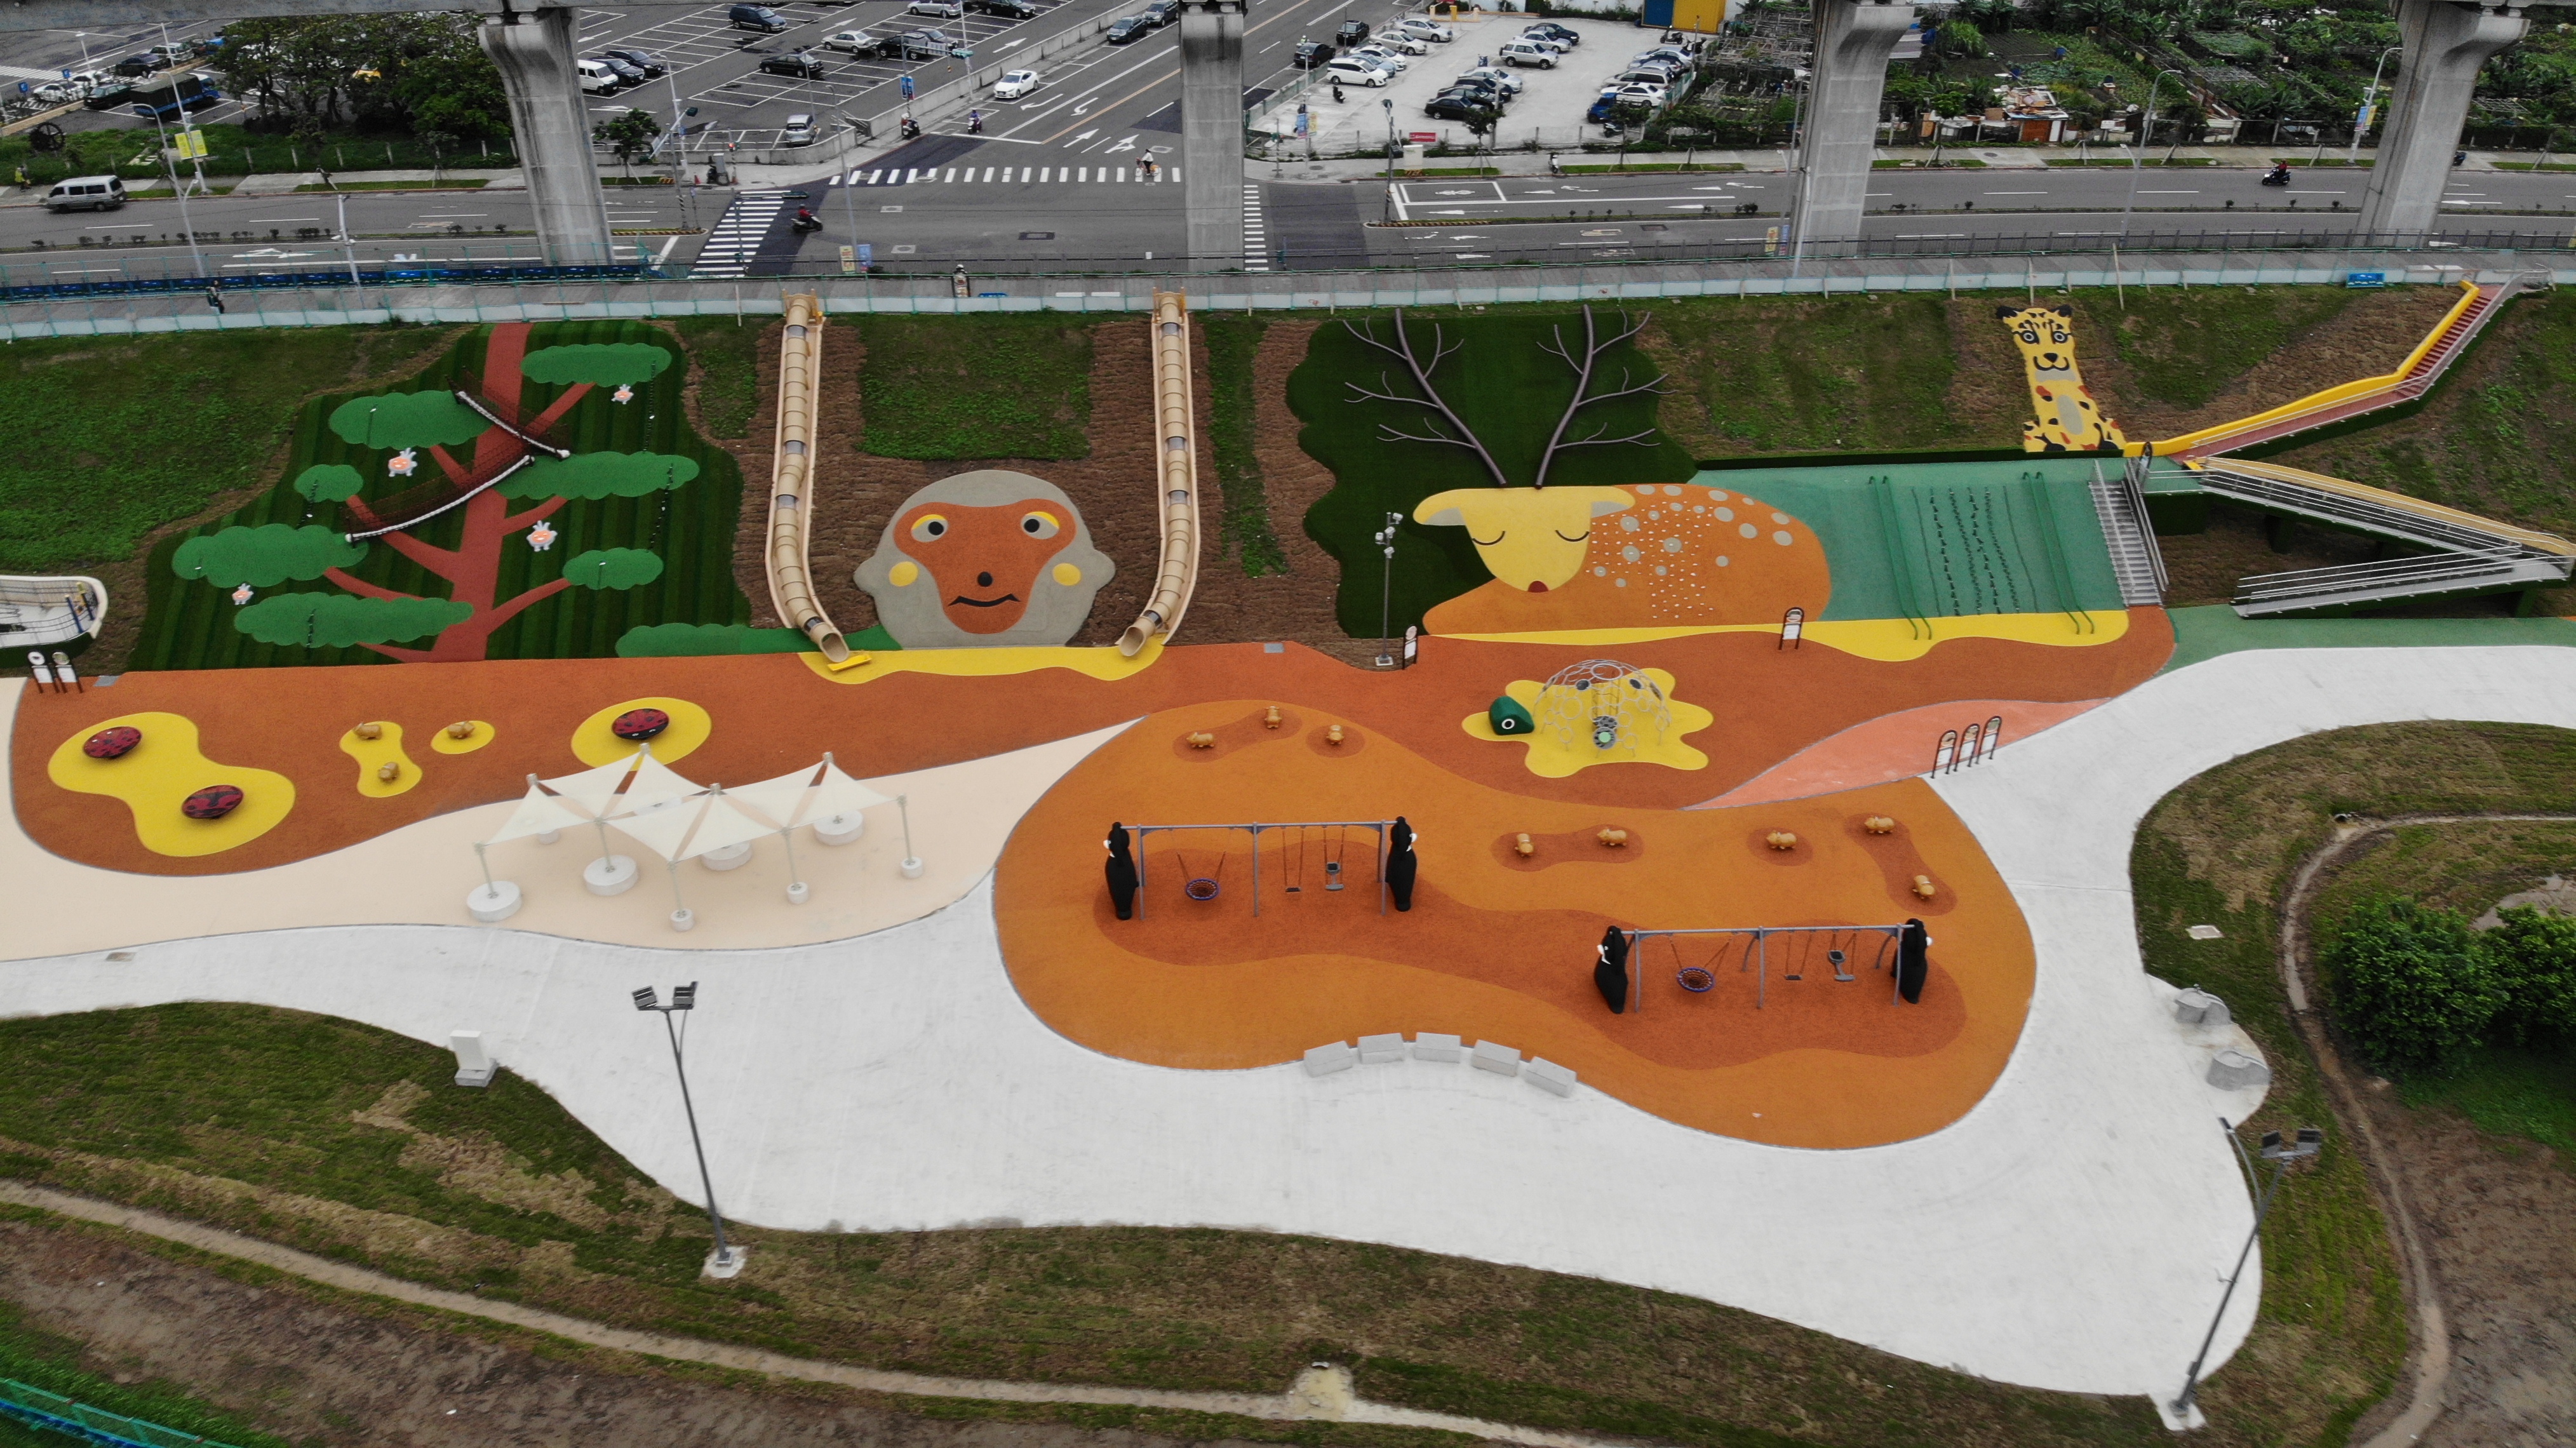 堤坡樂園是一座利用堤防施作各式遊具之全齡共融遊憩場所